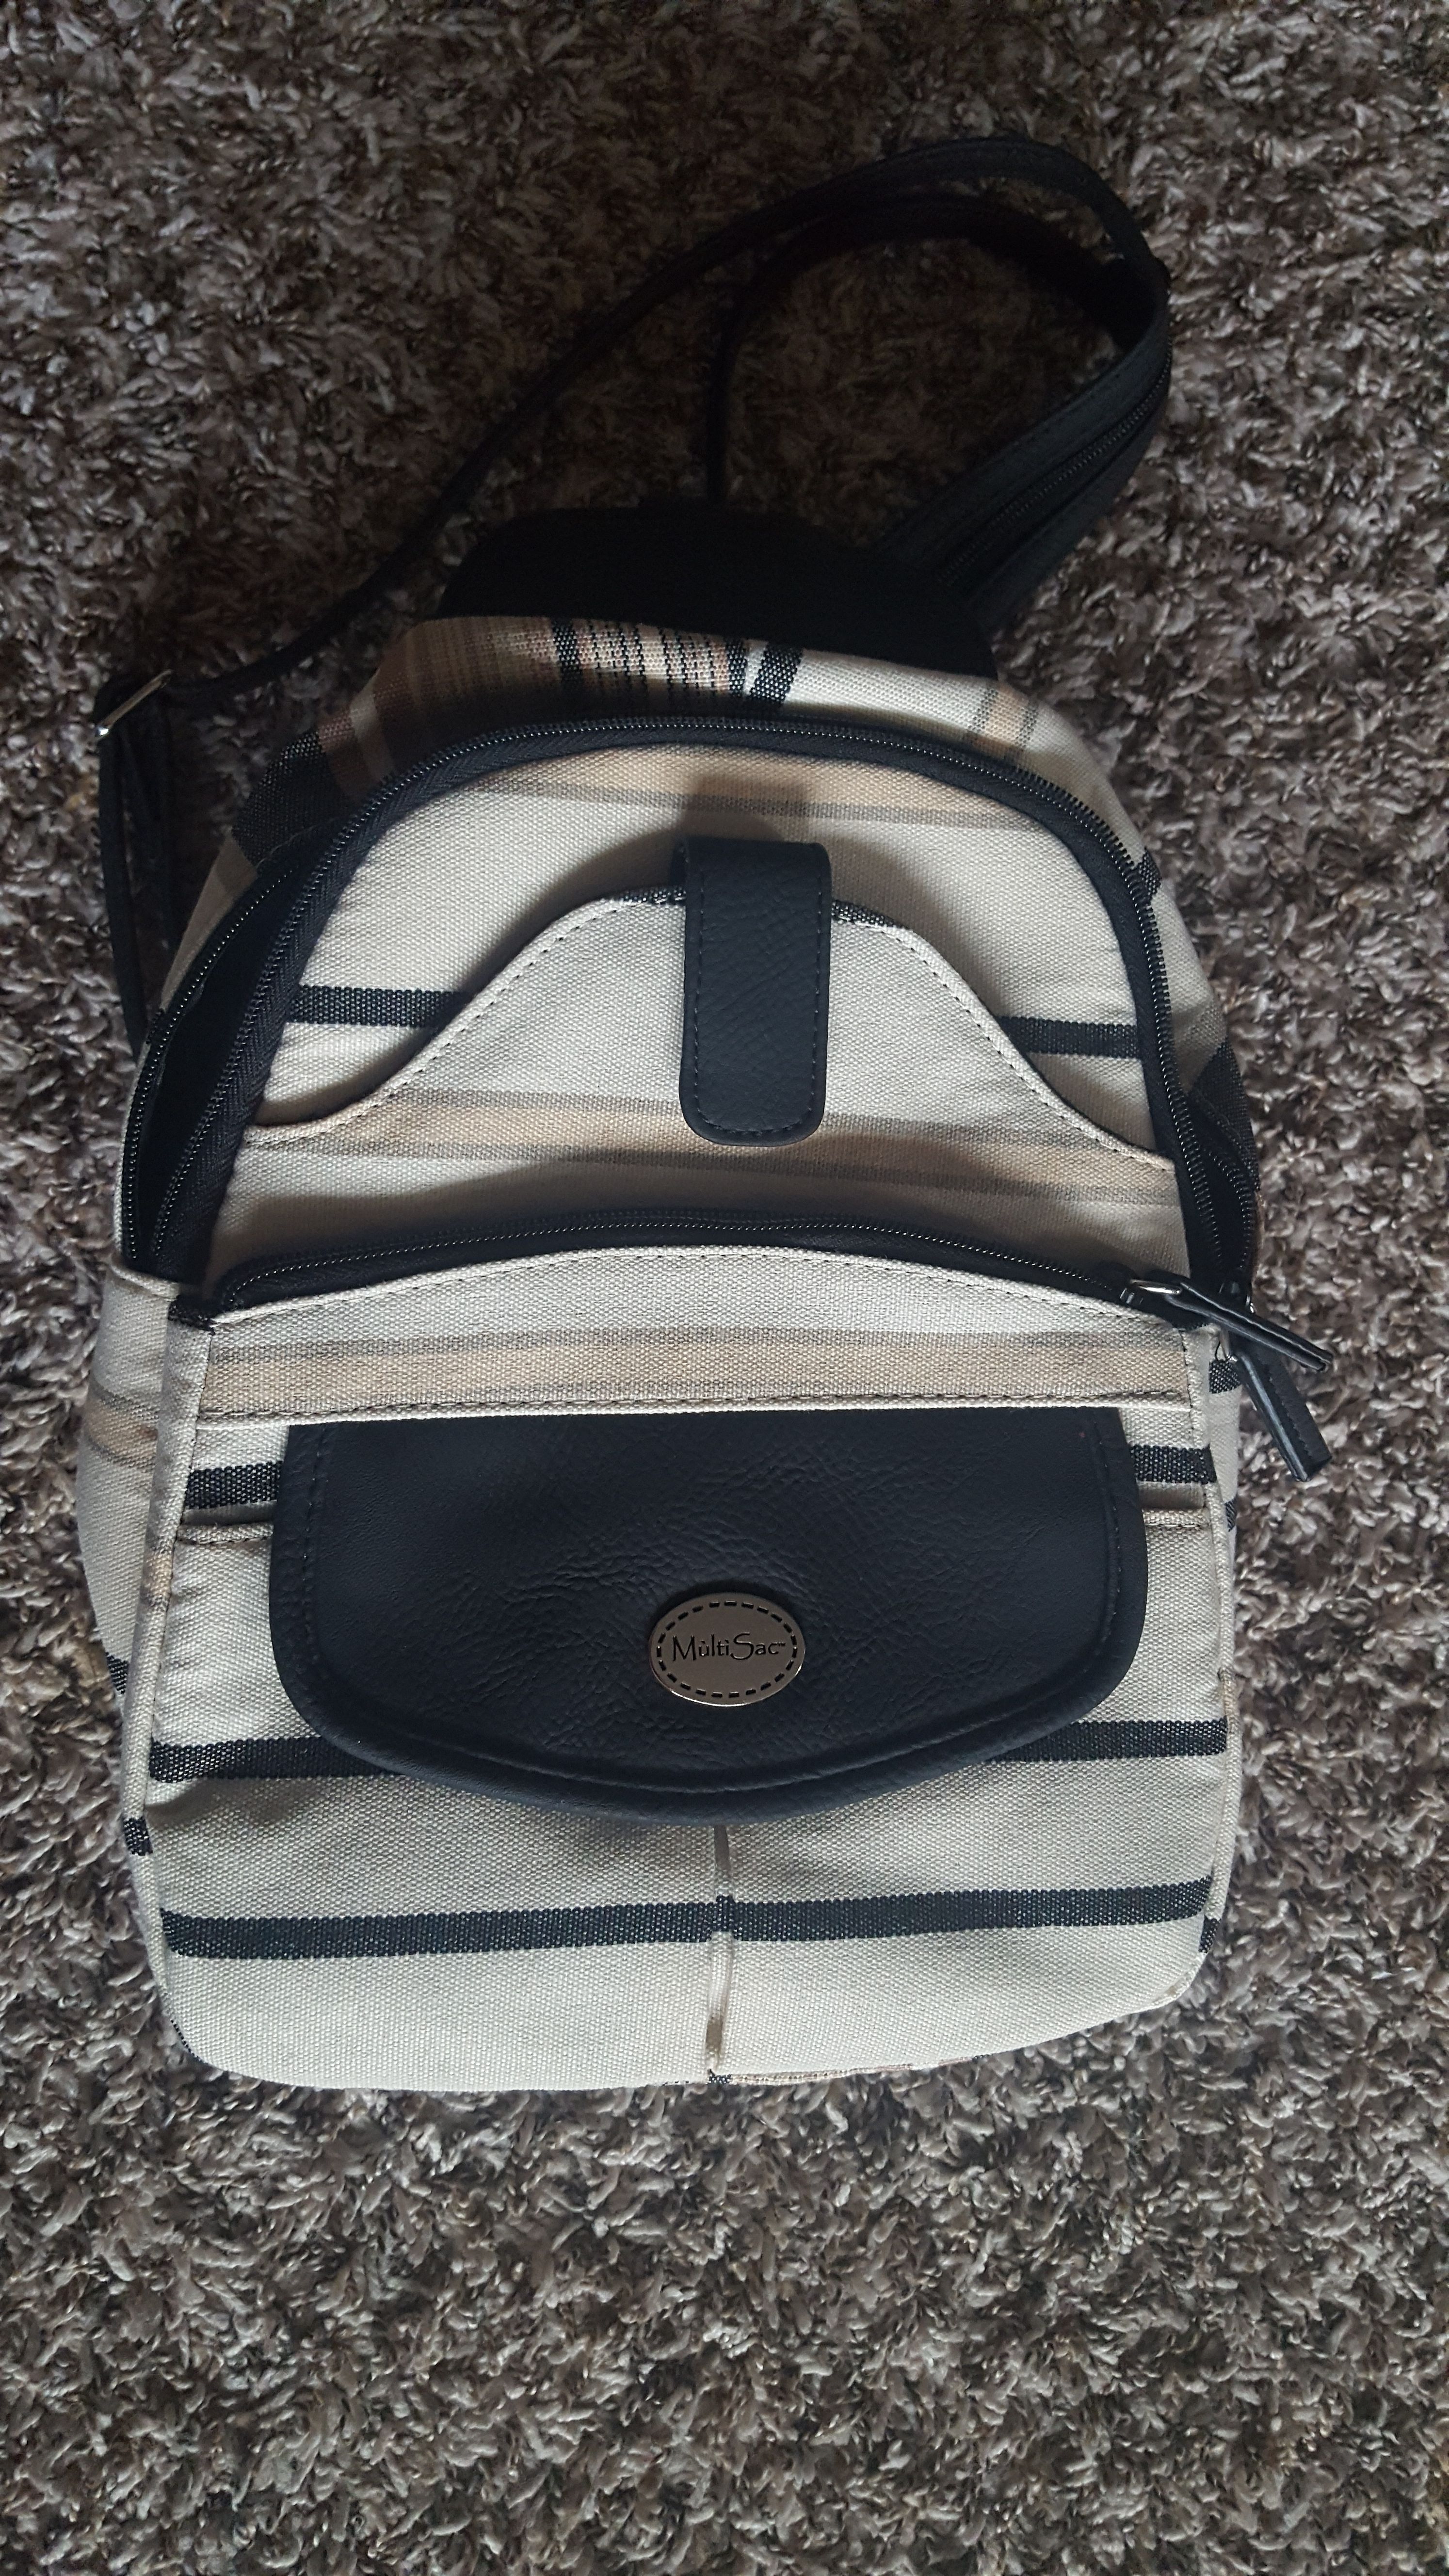 Multi Sac Major Adjustable Straps Backpack